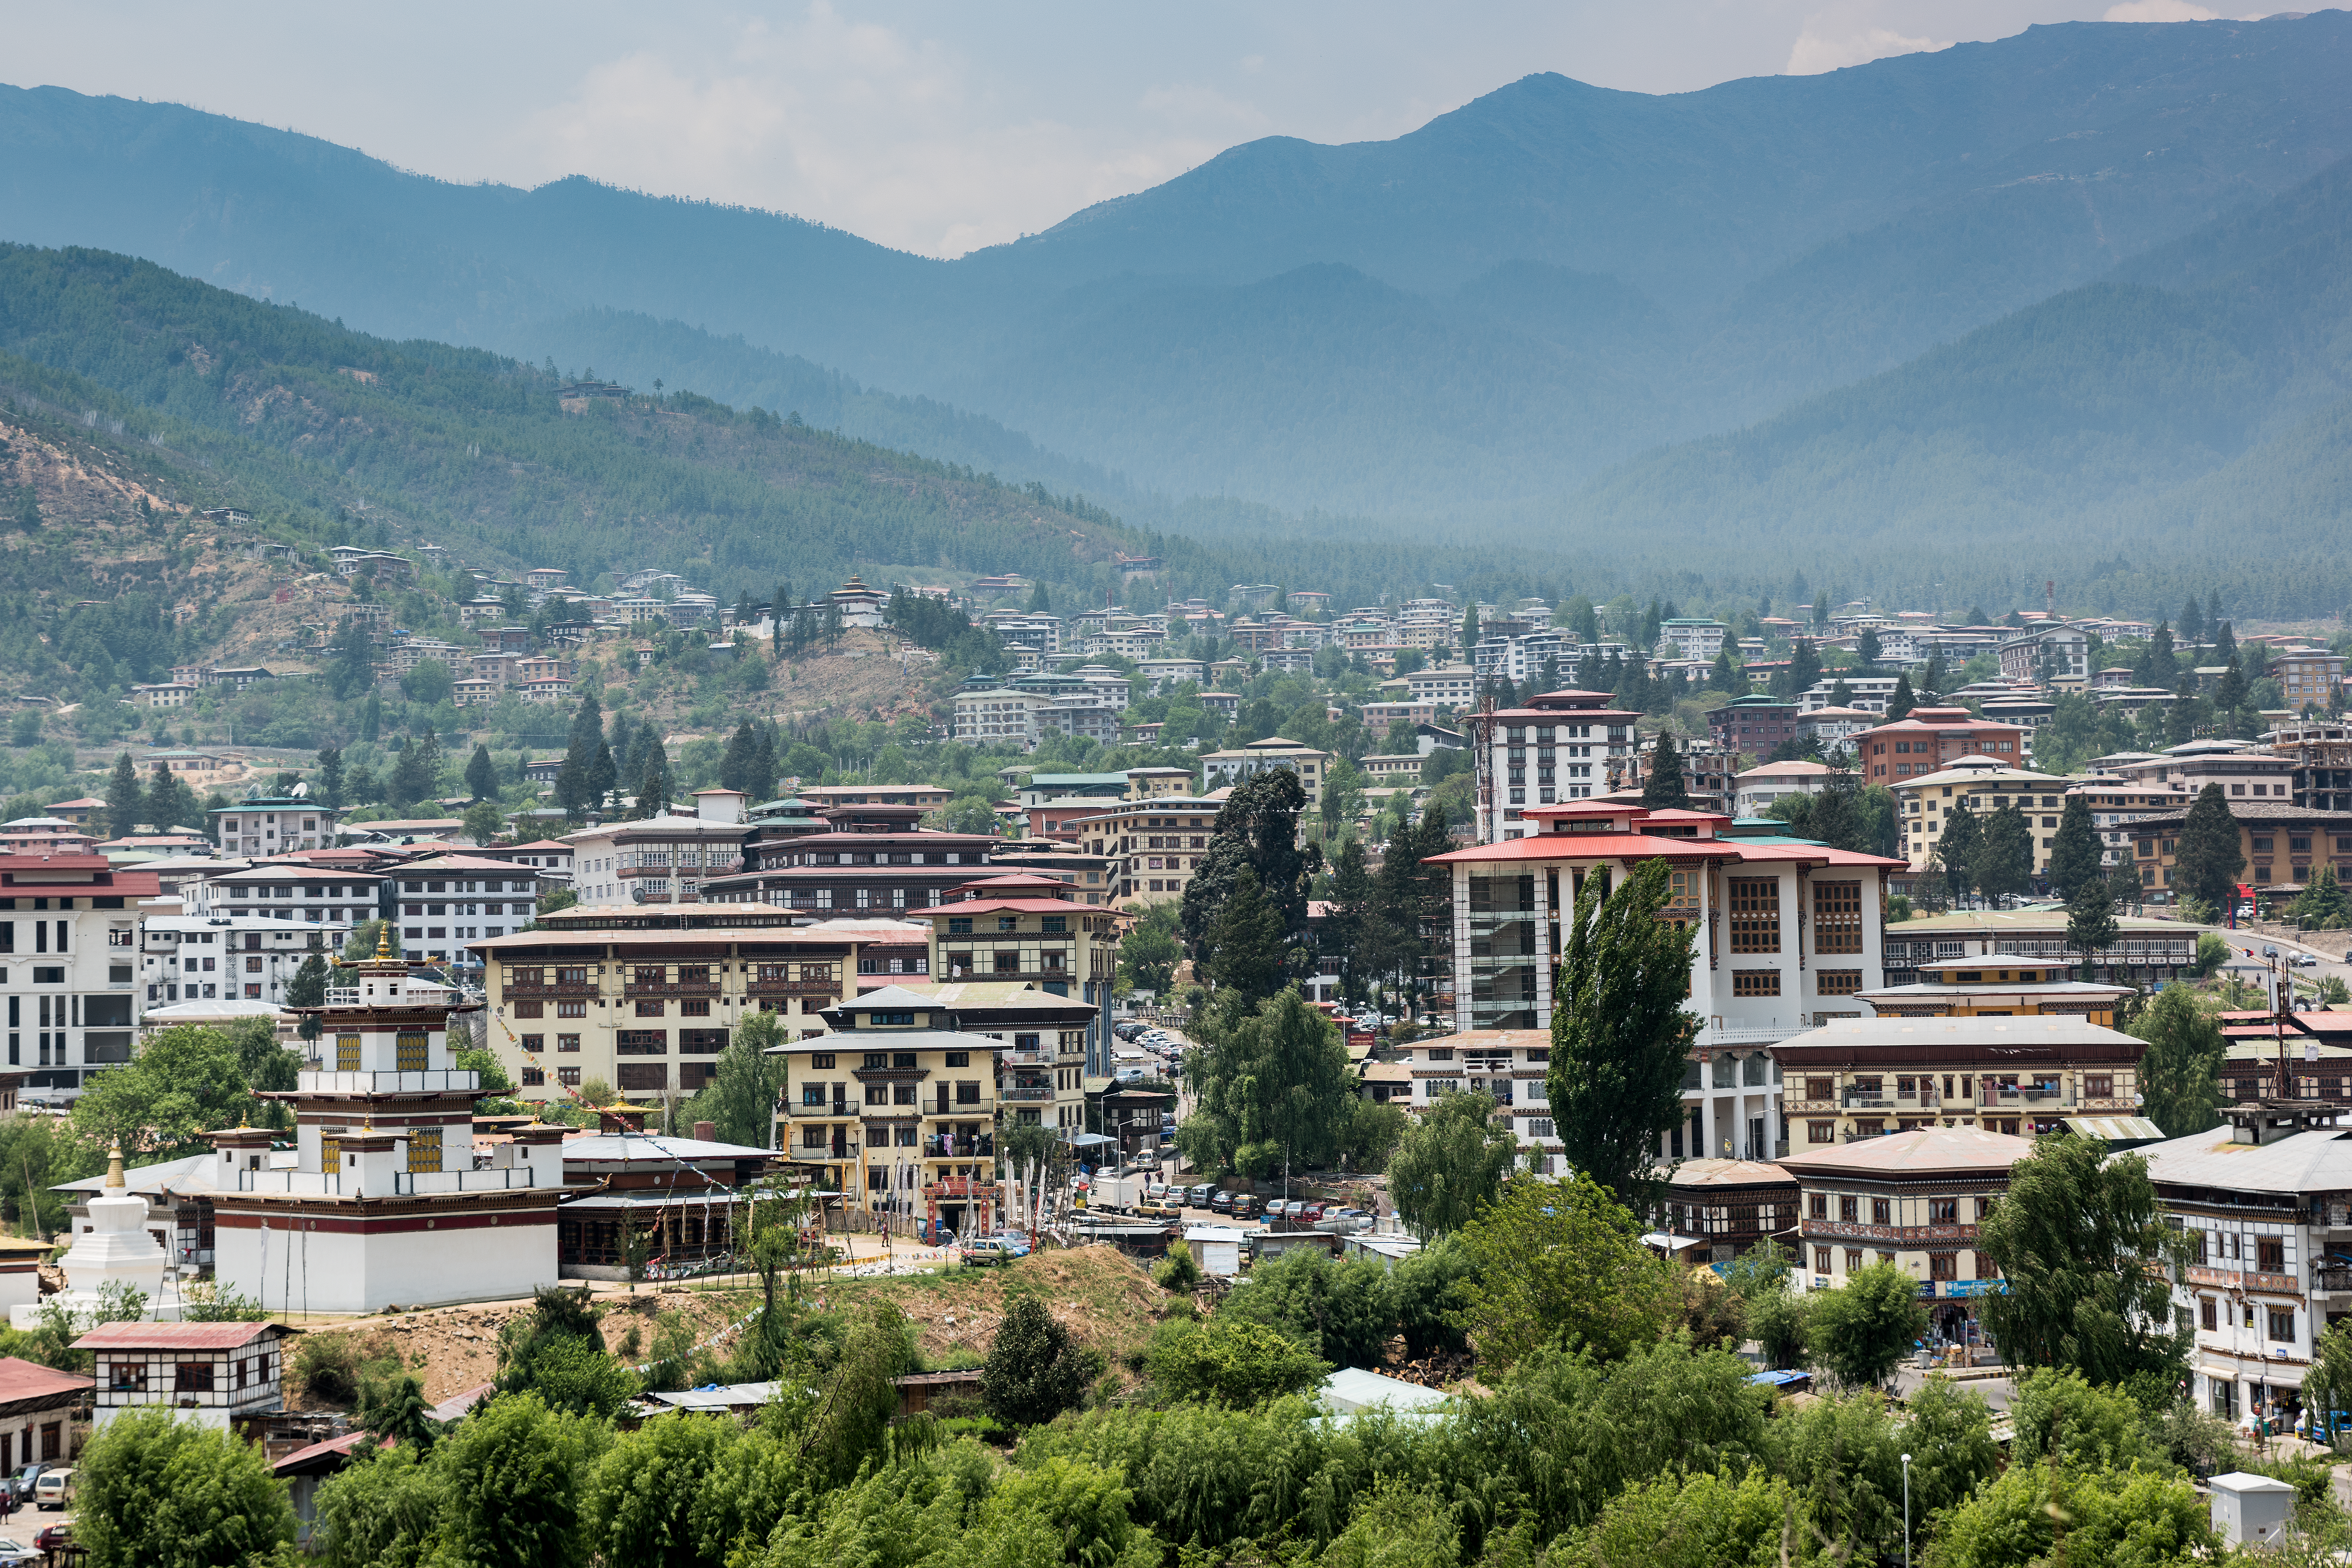 Thimphu, Bhutan (photo credit: Antonio Morales García/flickr)